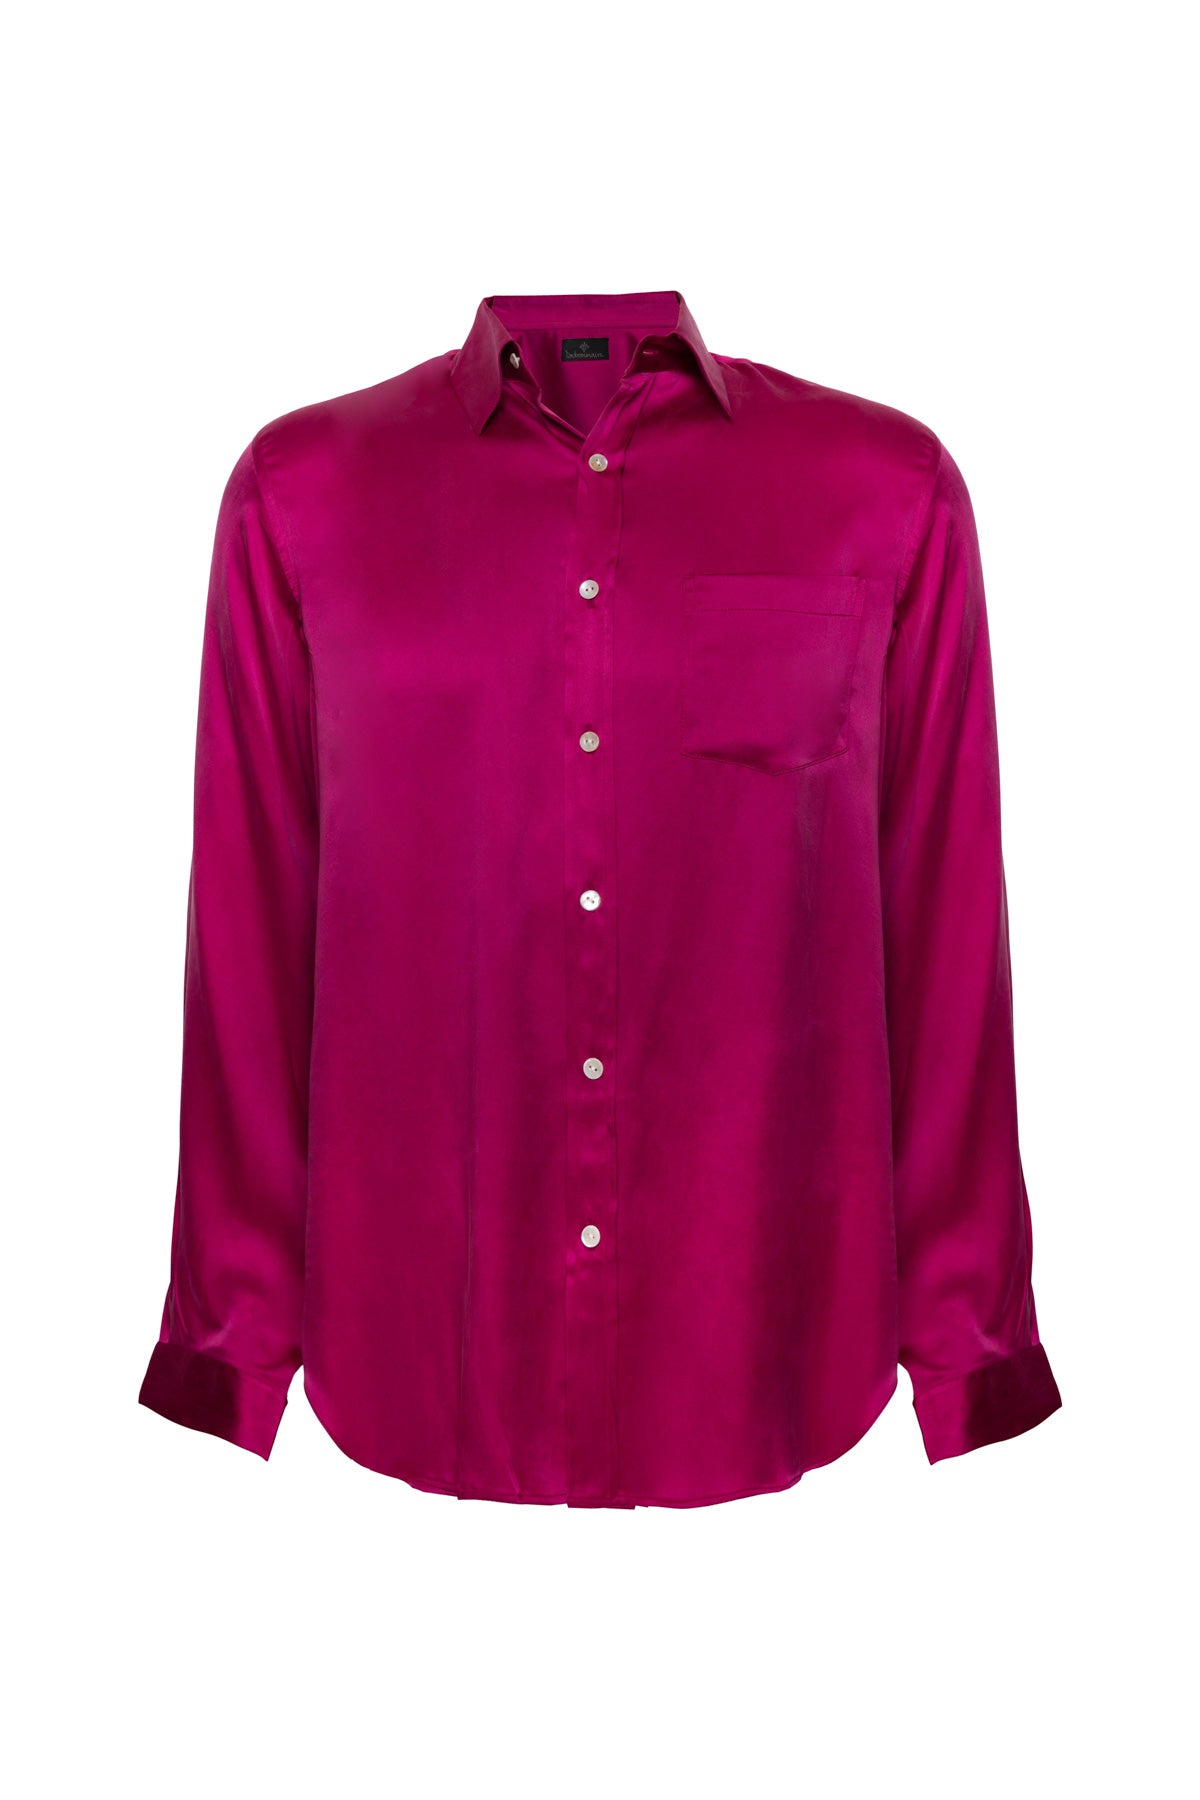 Men's Silk Shirt - Cardinal Pink